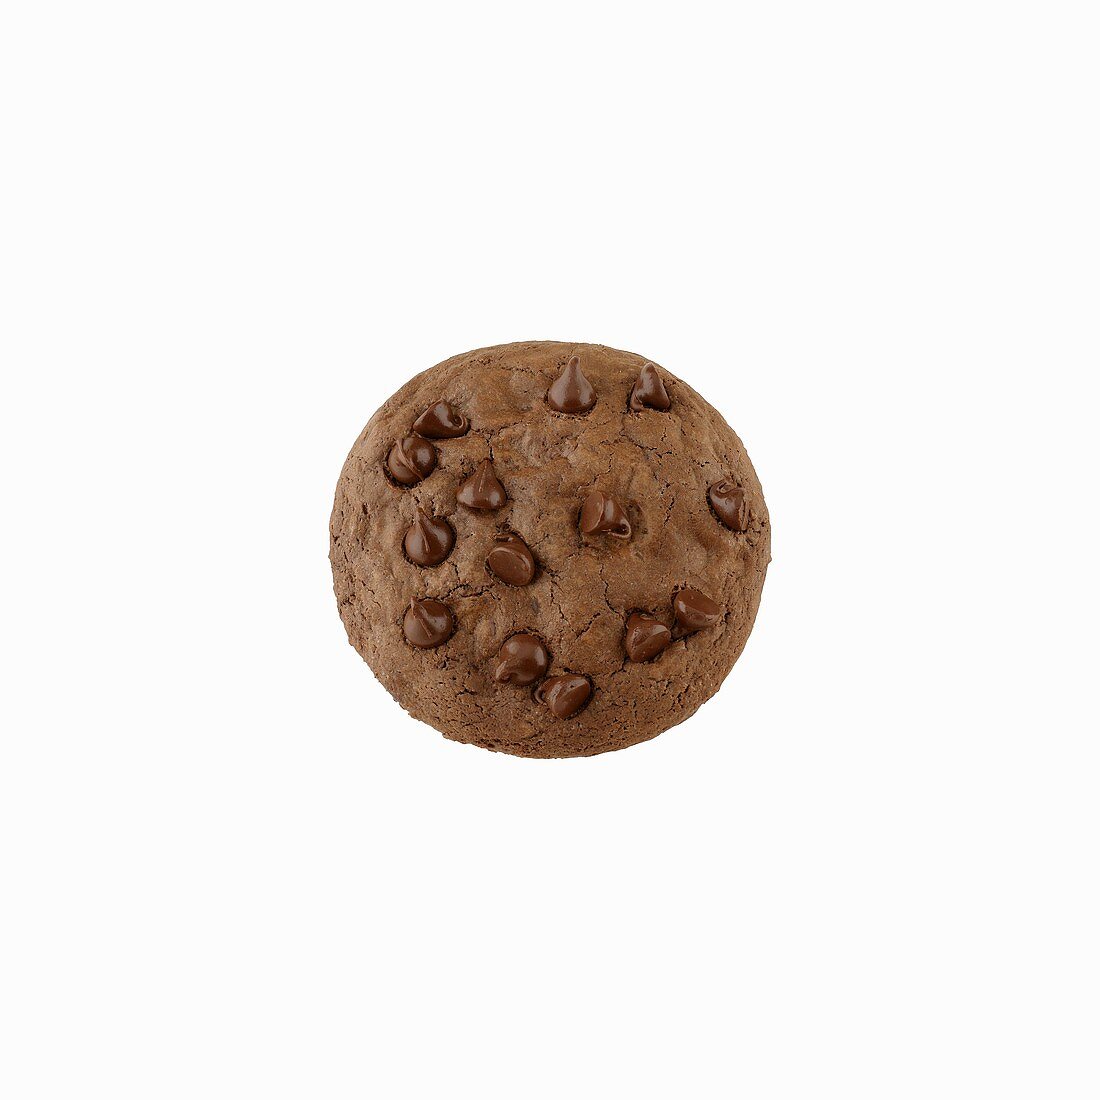 Ein Chocolate Chip Cookie